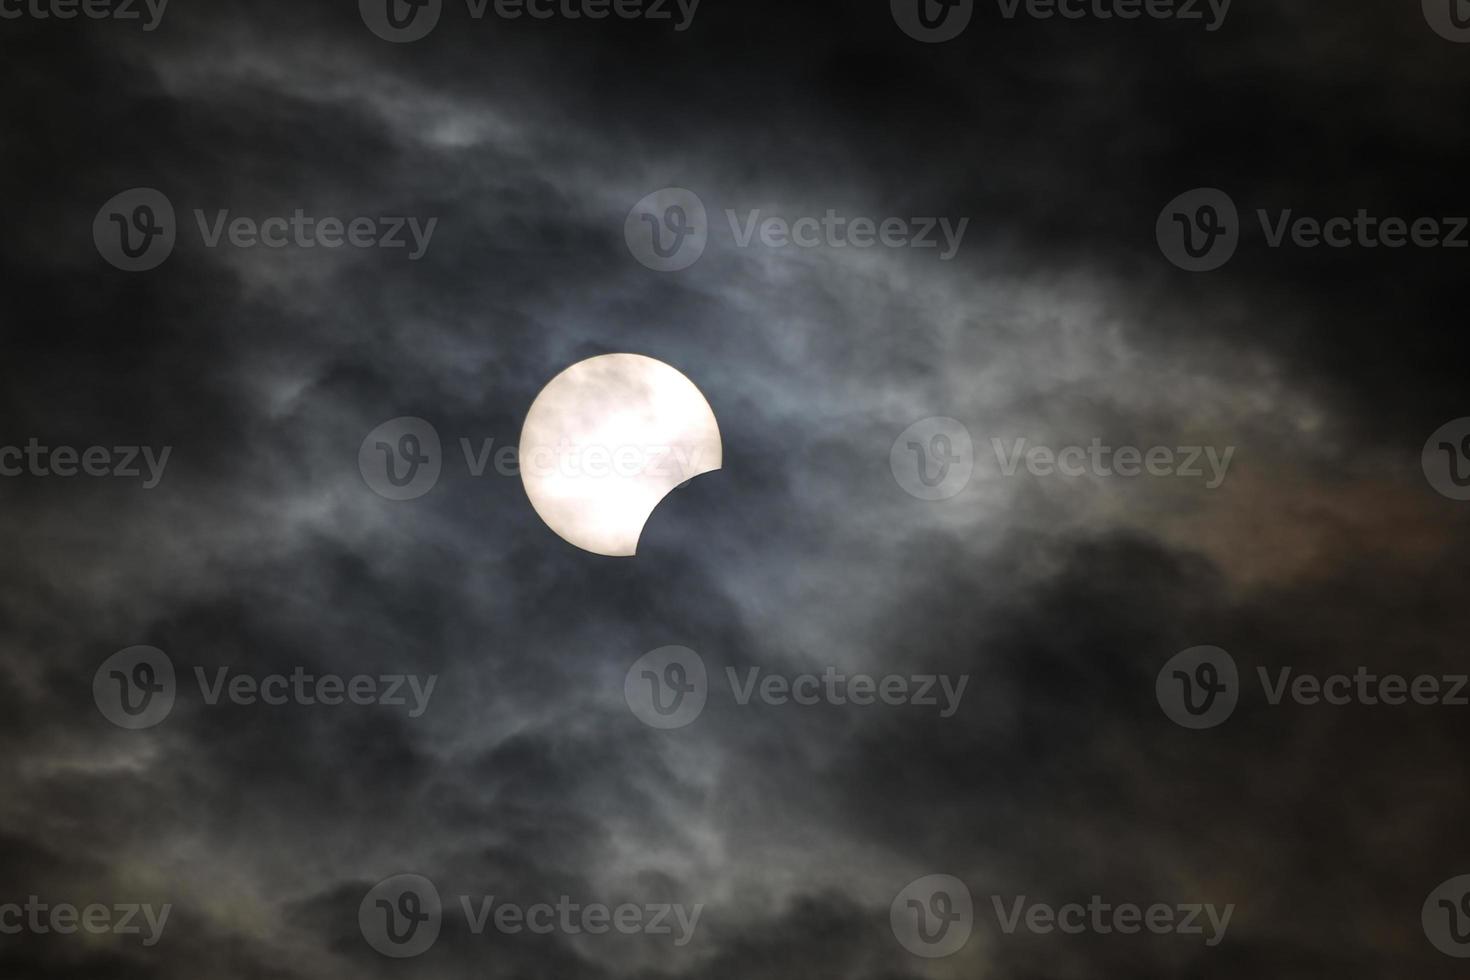 eclipse solar parcial en estambul, turquía foto